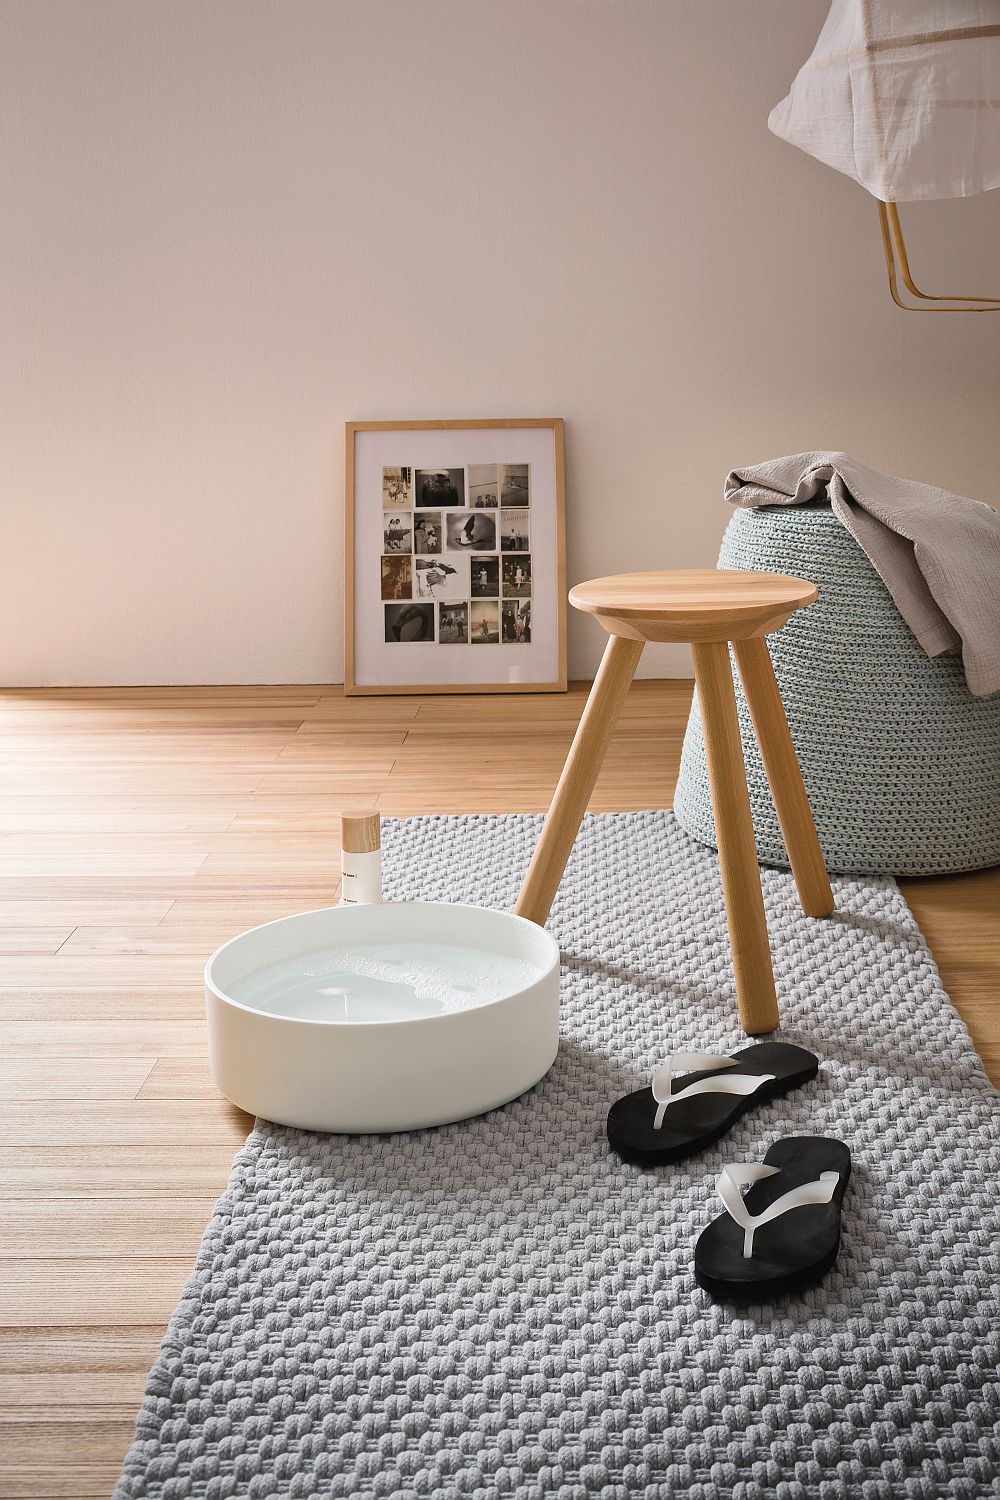 Съемный чехол для сиденья можно использовать как емкость для воды в ванной в стиле СПА